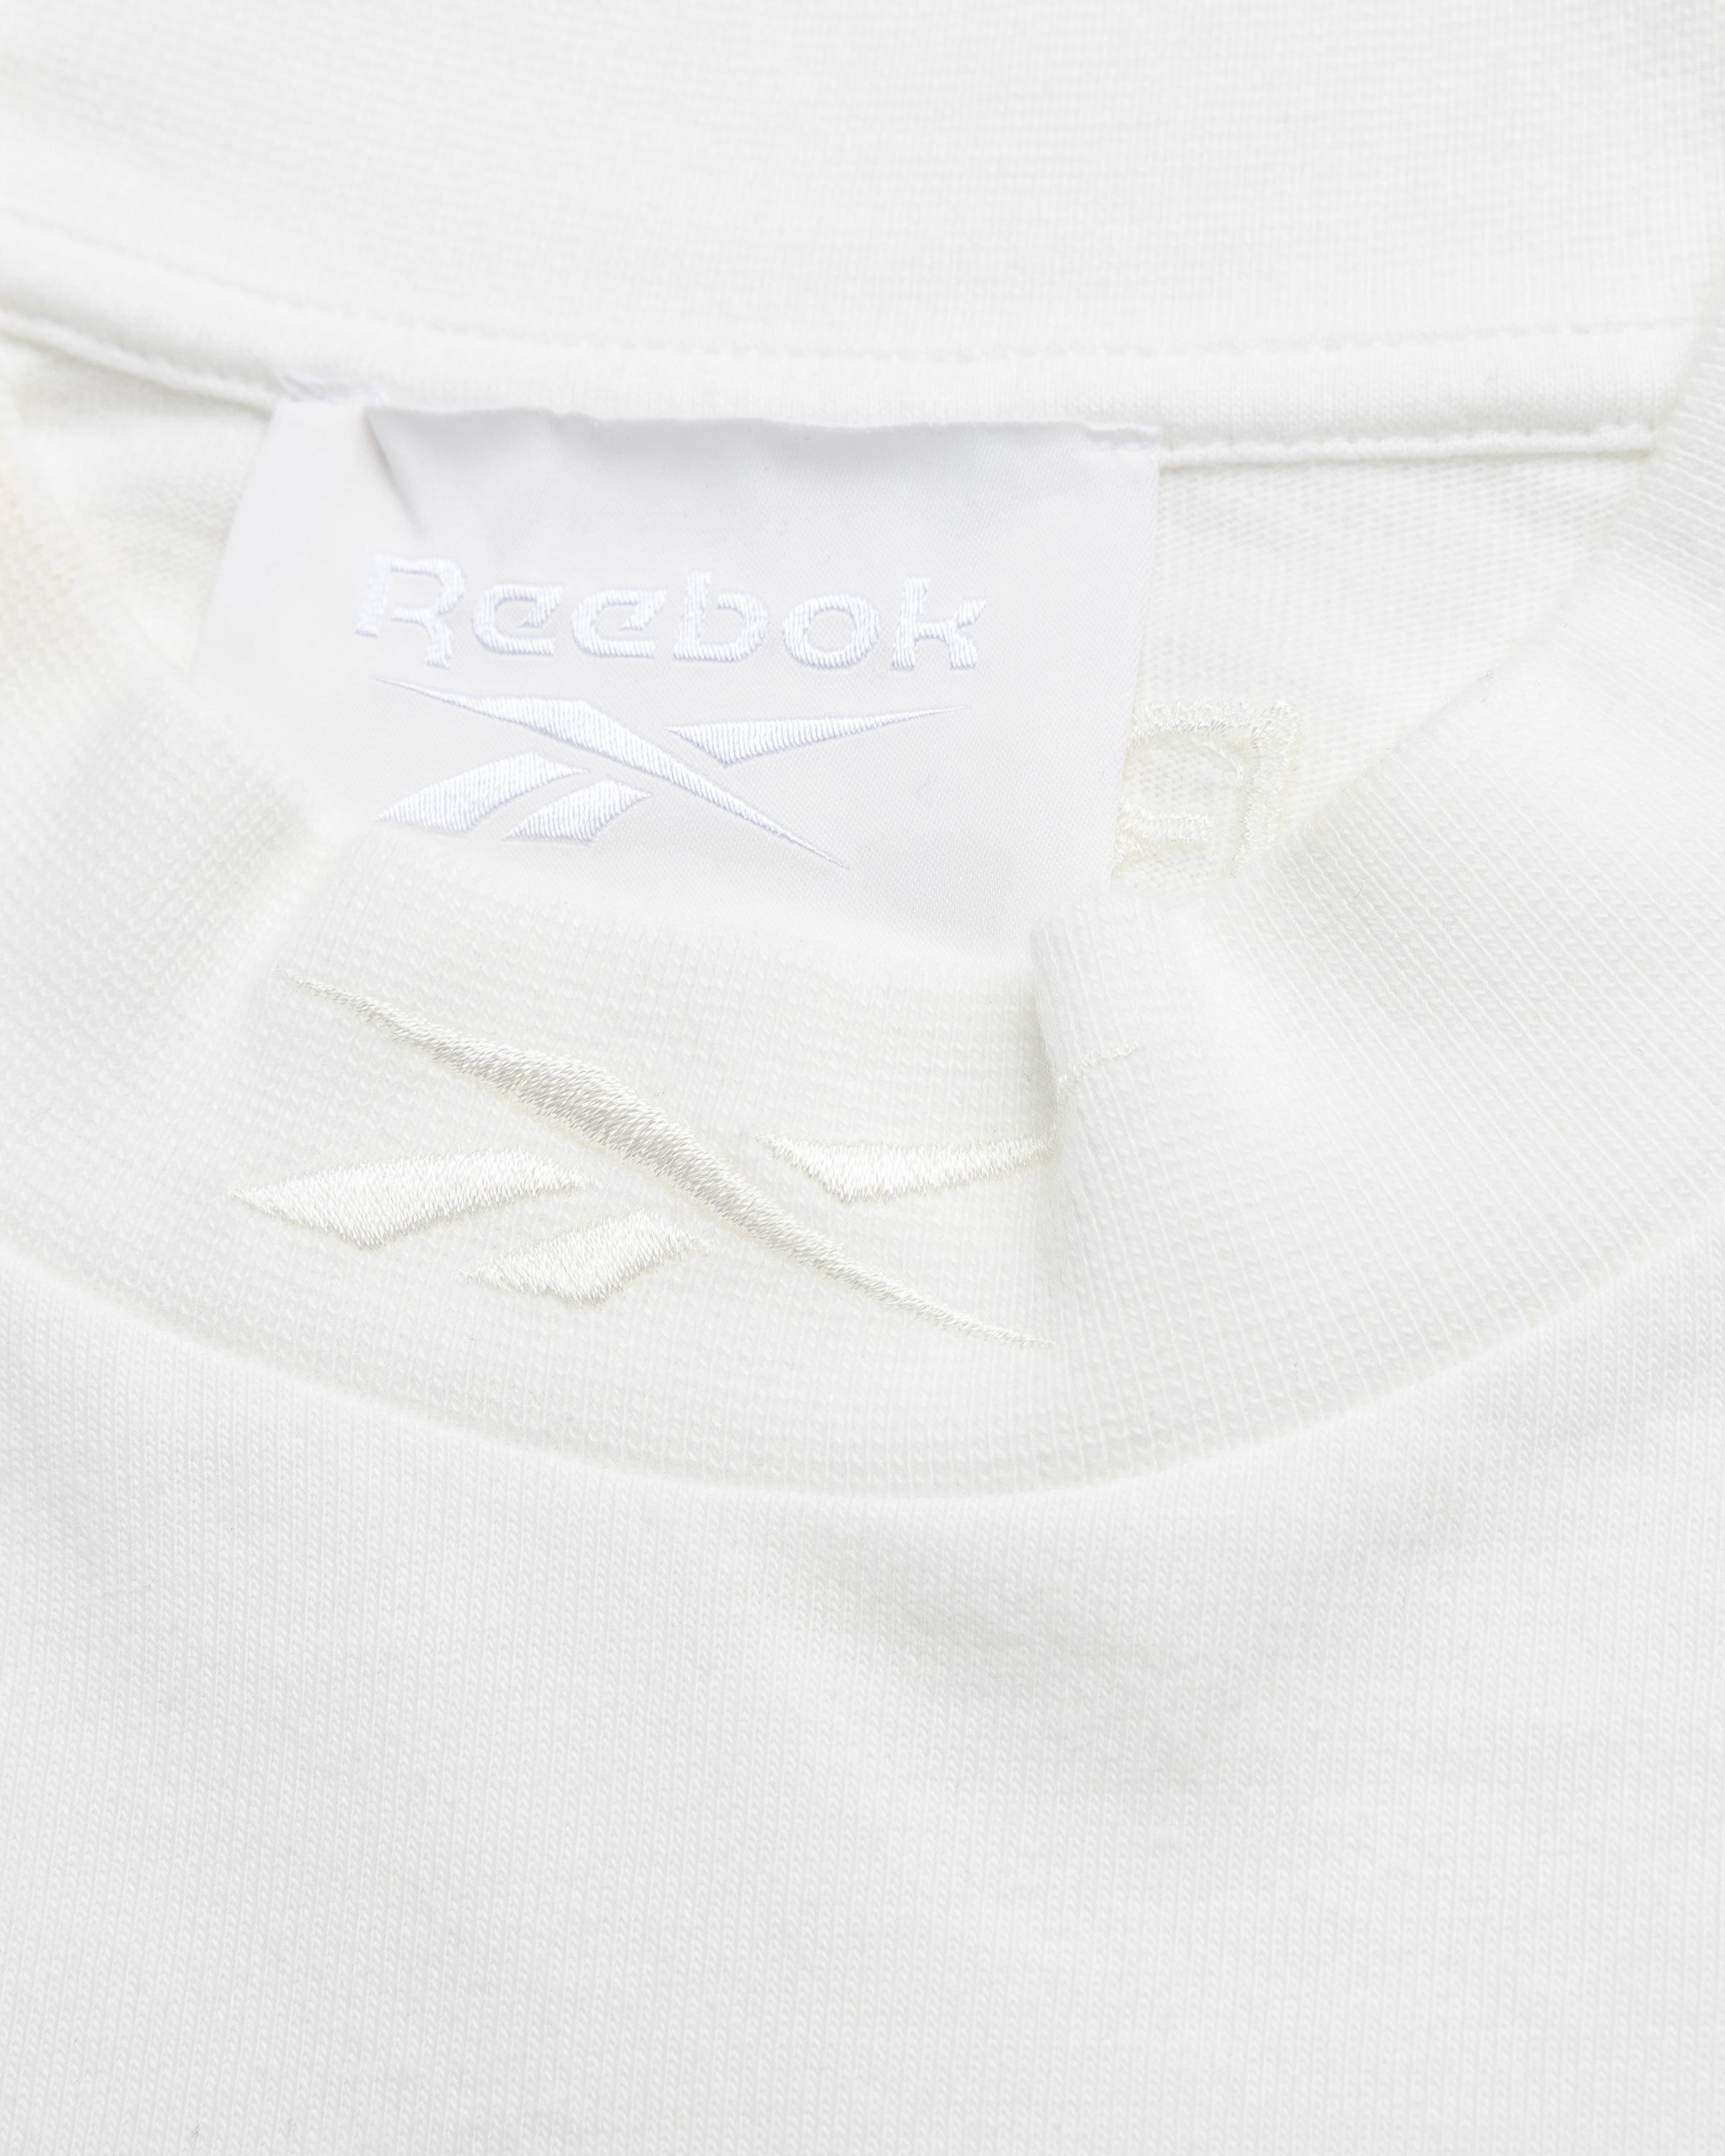 Reebok - Piped T-Shirt Bones - Clothing - White - Image 5